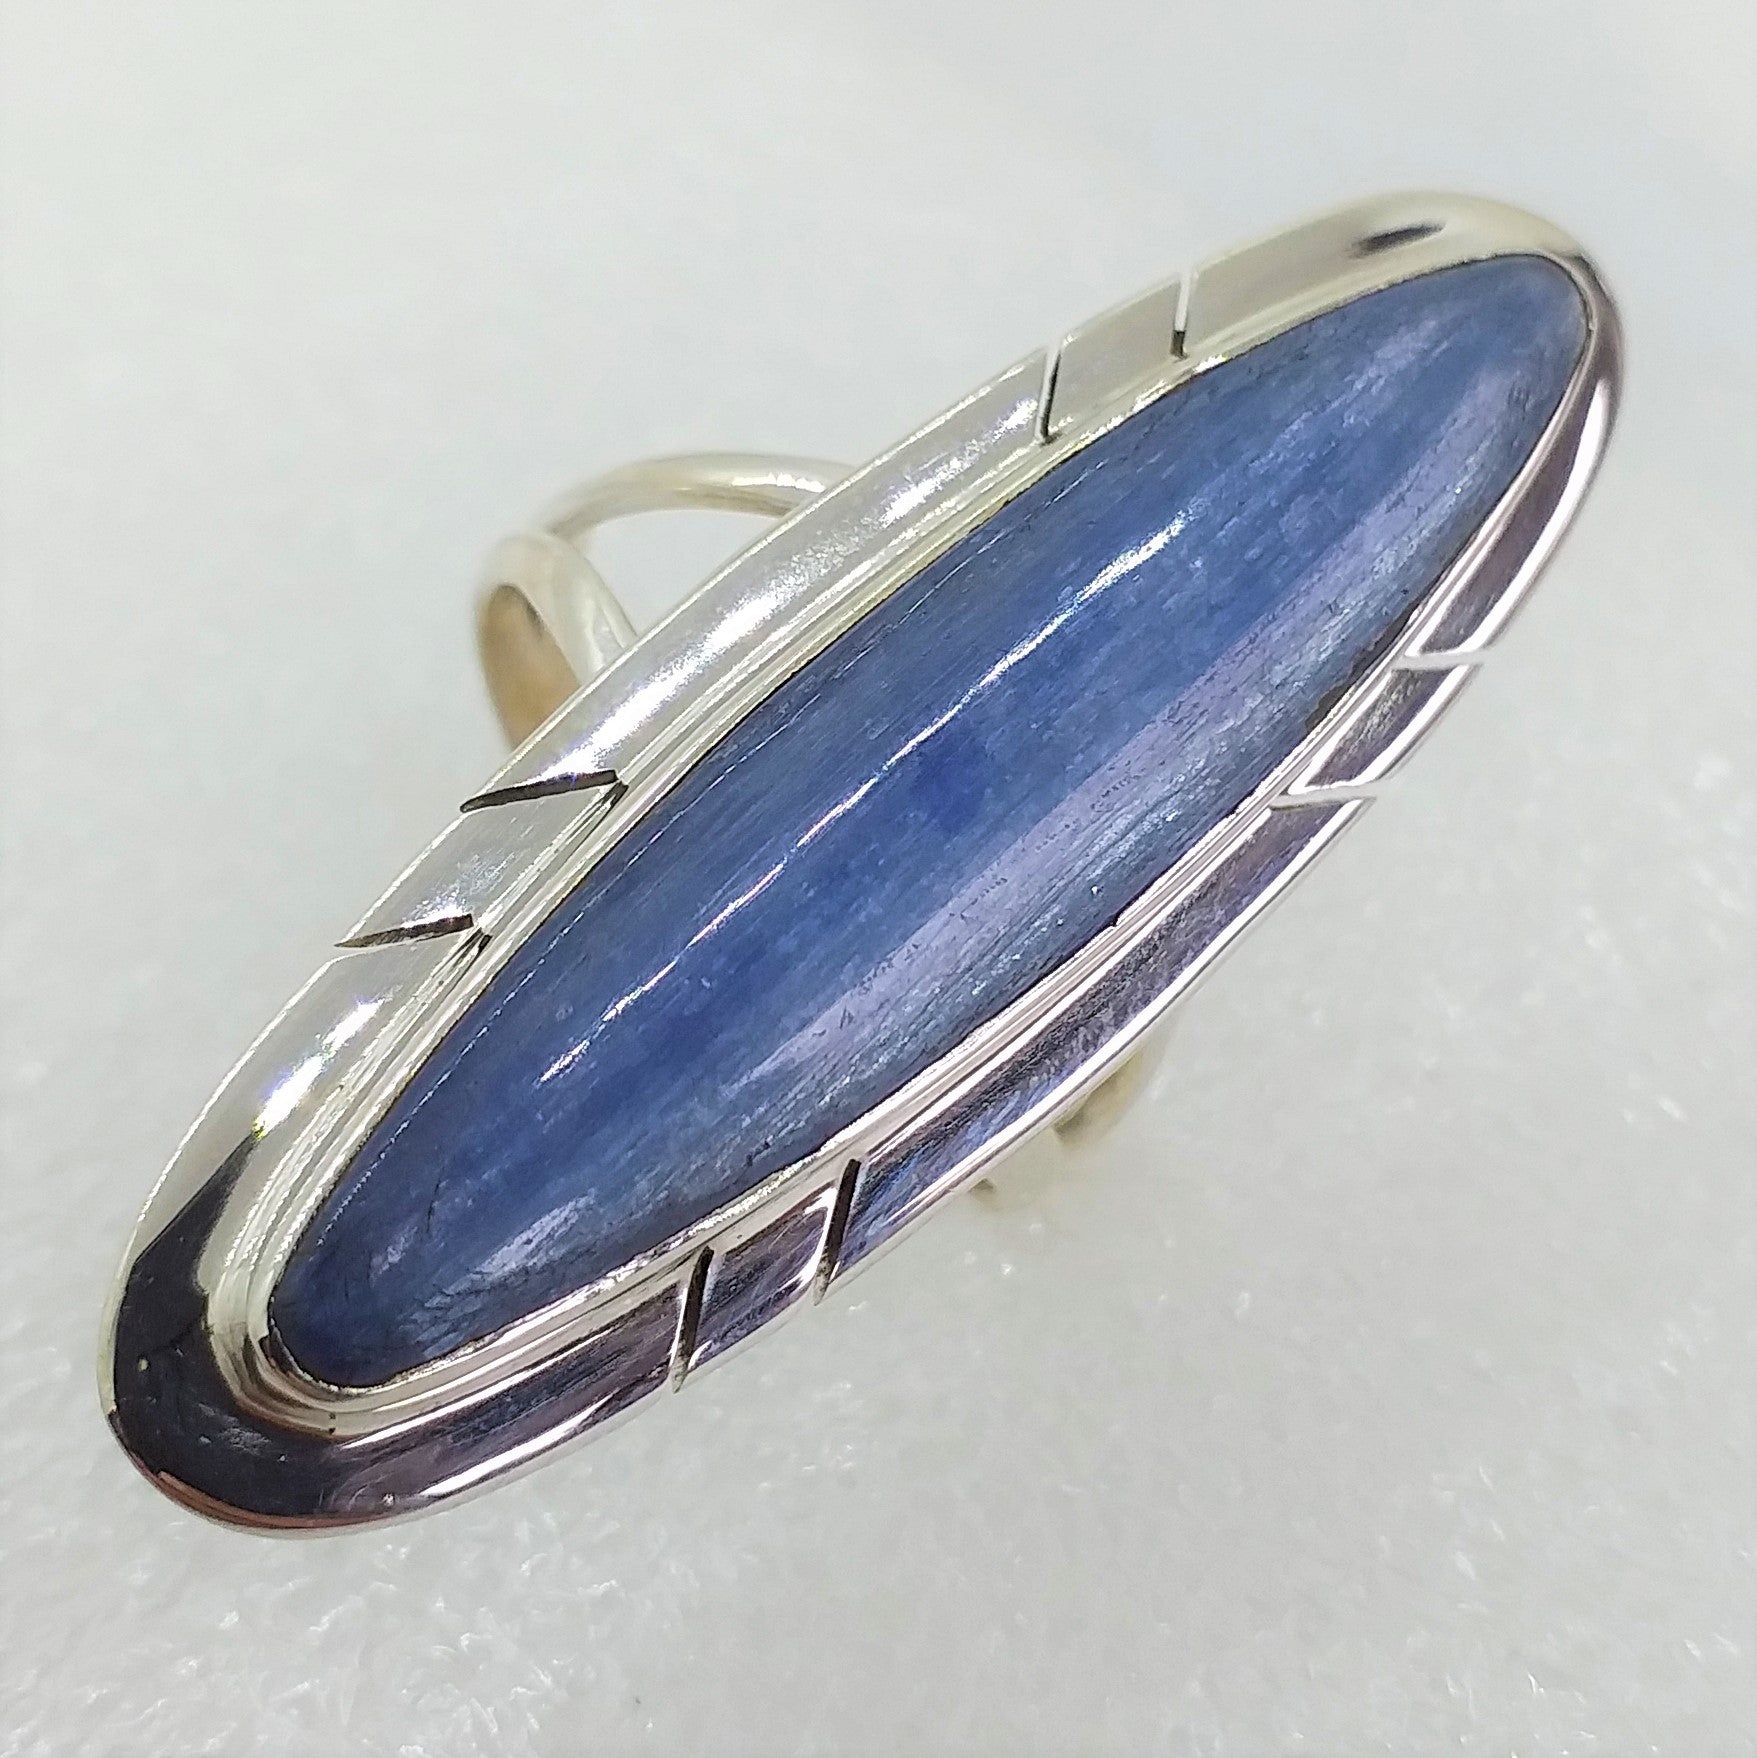 KYANIT blau Ring RIESIG Gr. 18 925 Sterling Silber